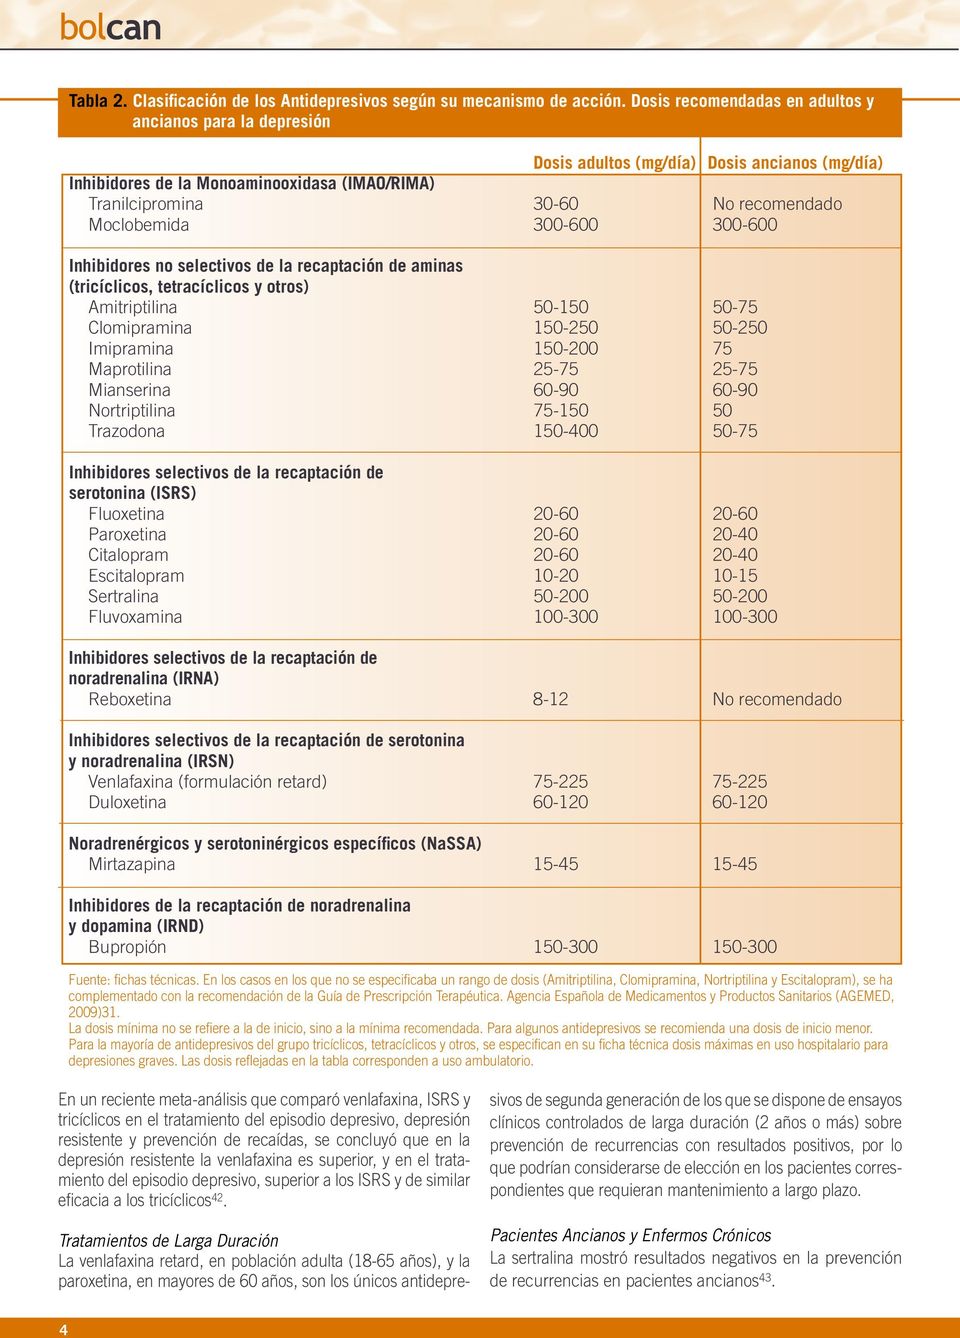 Moclobemida 300-600 300-600 Inhibidores no selectivos de la recaptación de aminas (tricíclicos, tetracíclicos y otros) Amitriptilina 50-150 50-75 Clomipramina 150-250 50-250 Imipramina 150-200 75